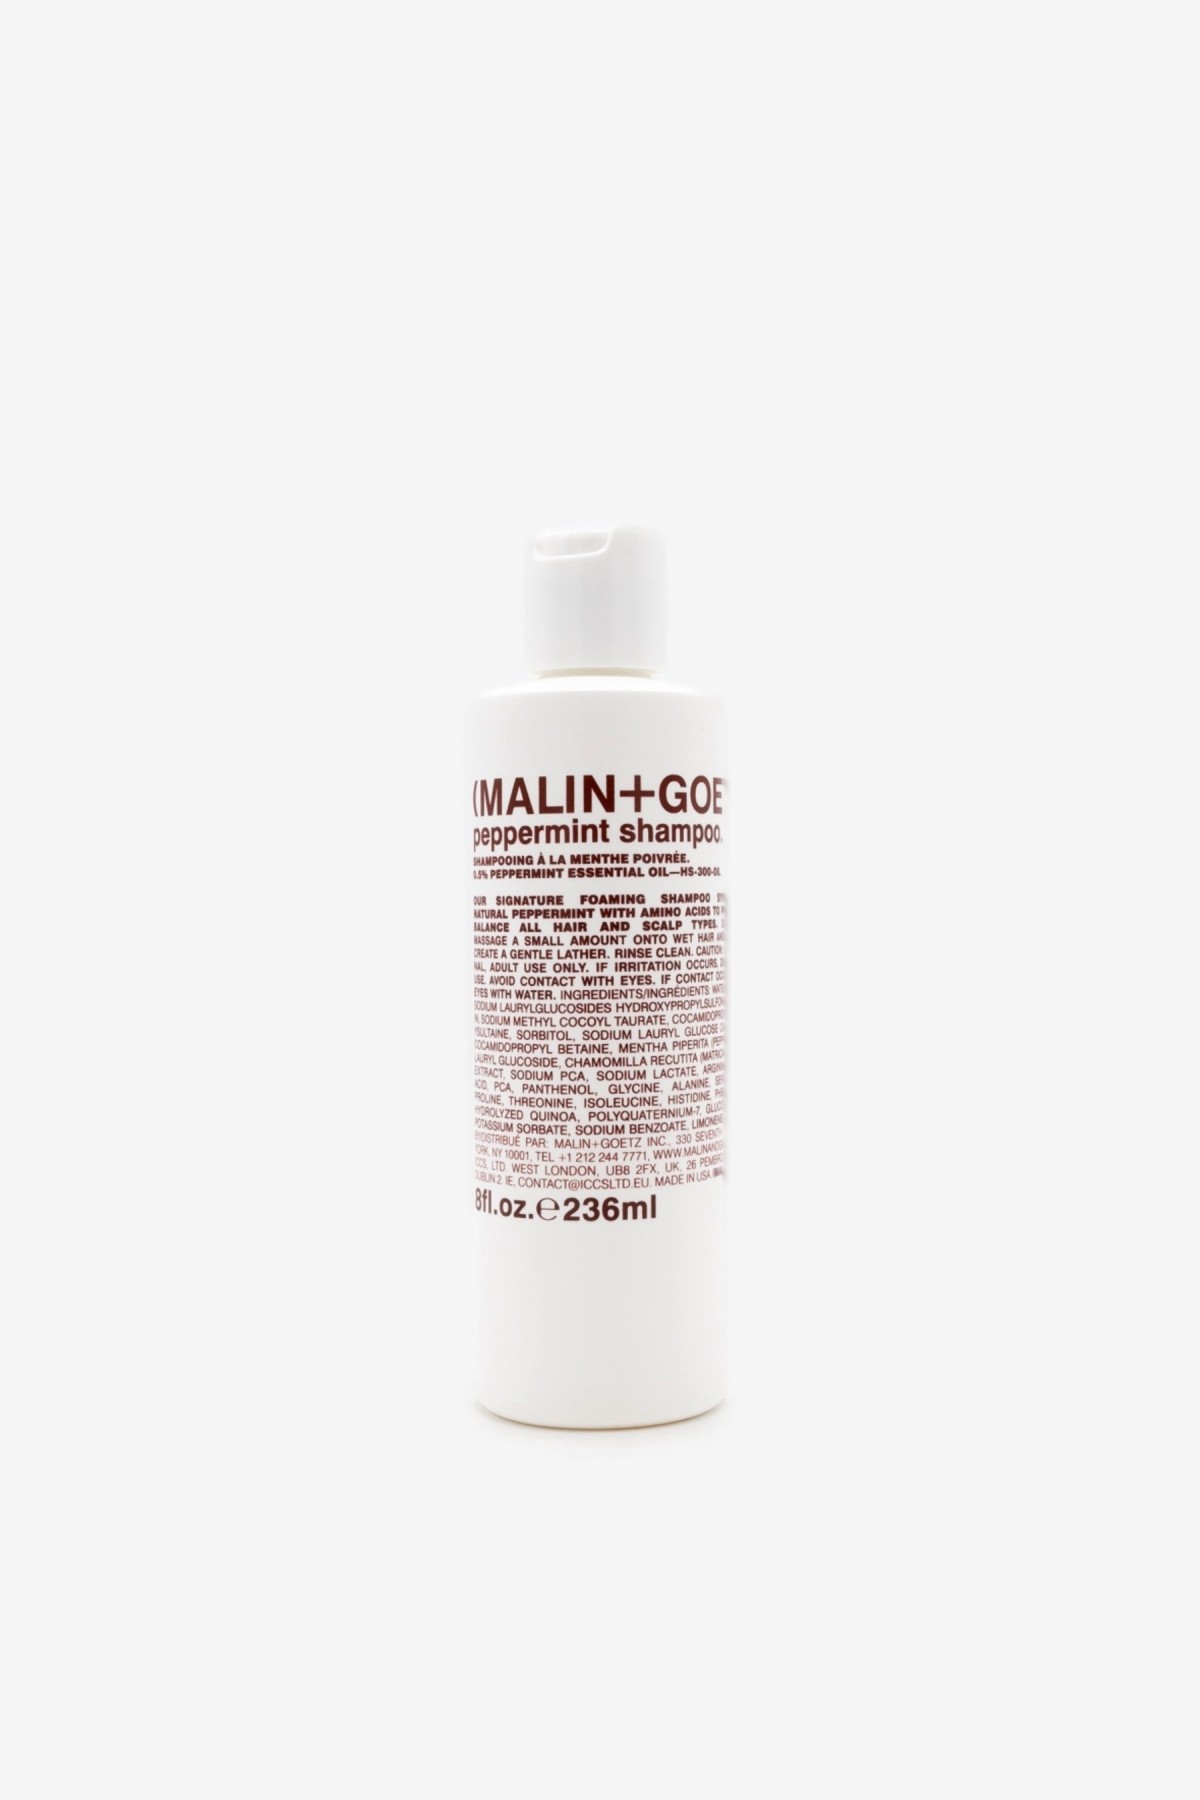 Malin+Goetz Peppermint Shampoo 236ml in 